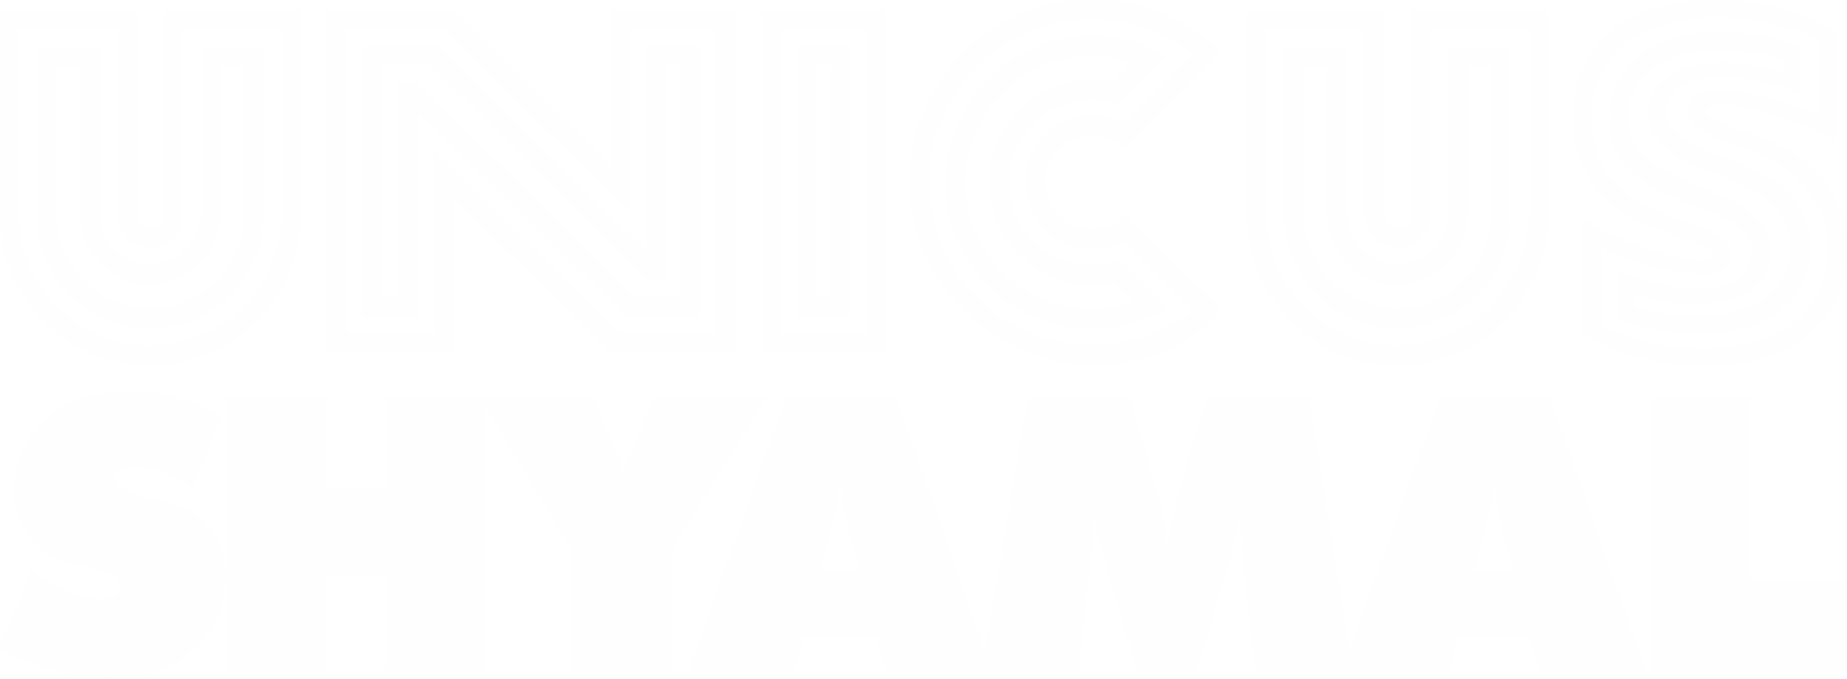 Unicus Shyamal Logo